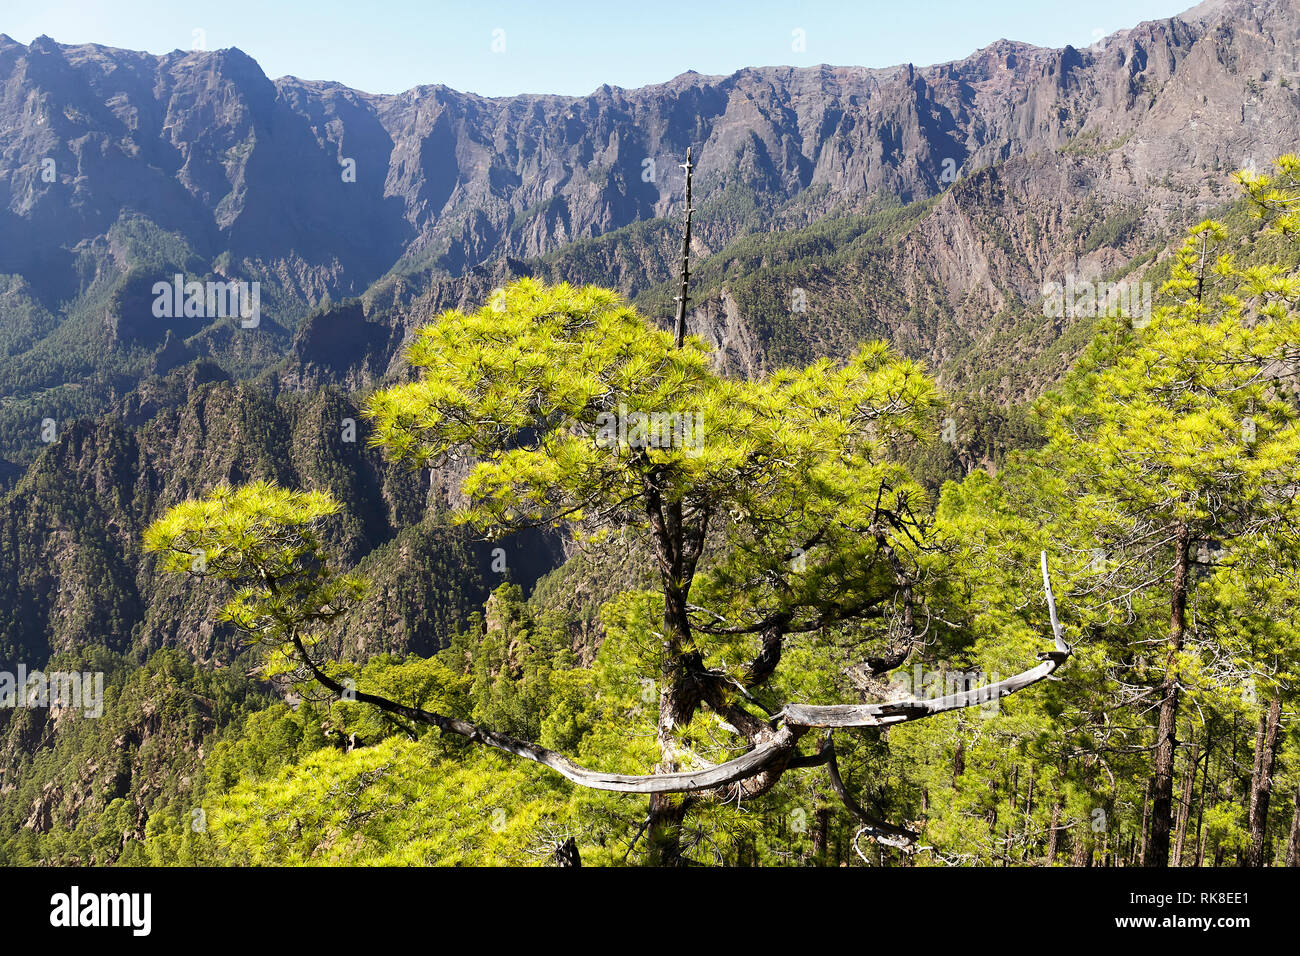 Canarian Pines at Caldera de Taburiente in La Palma, Canaruy Islands Stock Photo